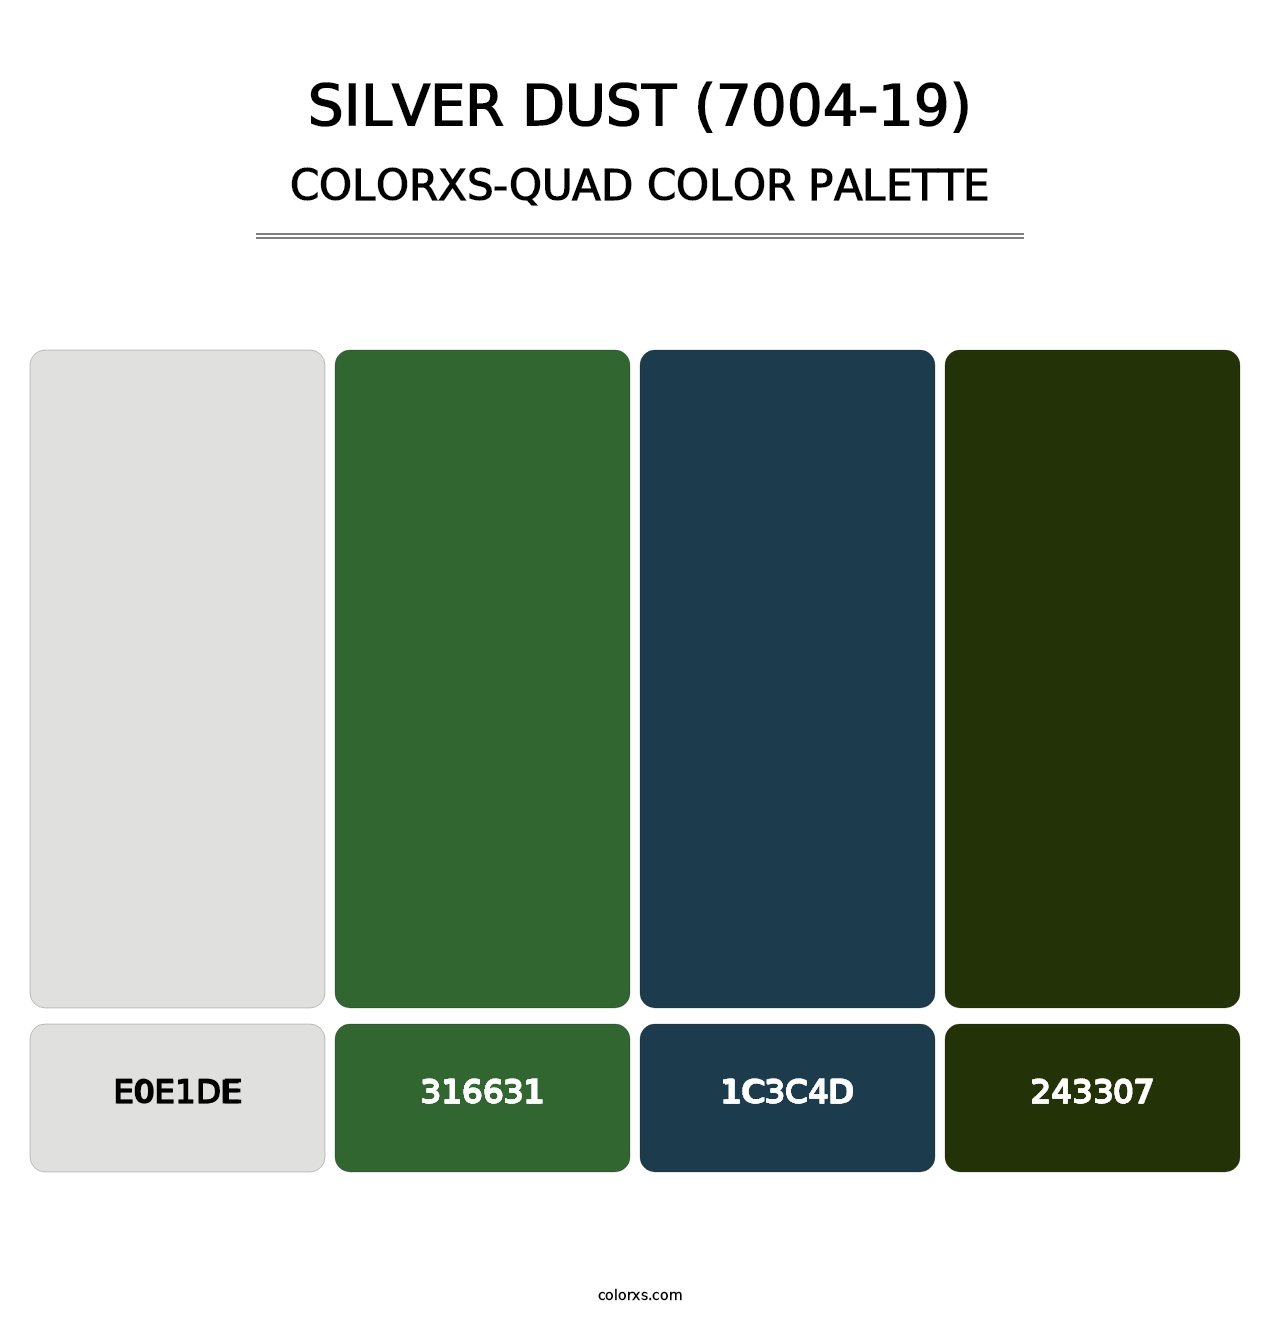 Silver Dust (7004-19) - Colorxs Quad Palette